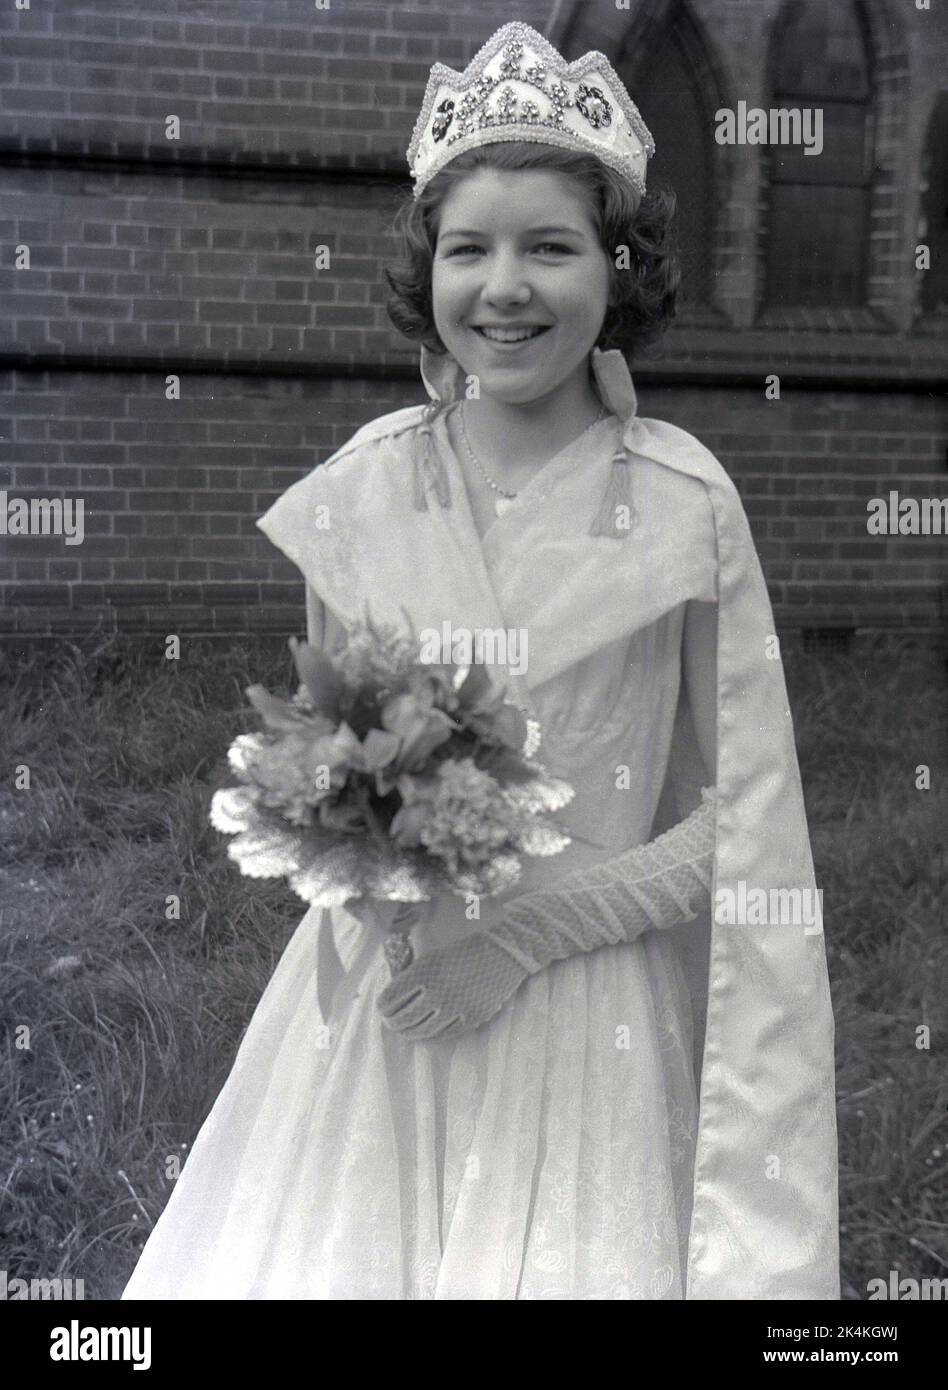 1959, historisch, ein Teenager-Mädchen, die lokale May Queen, steht für ihr Foto in ihrem langen Kleid, mit Blumen und Krone auf dem Kopf, Leeds, England, Großbritannien. Ihr Foto wird auf dem Gelände der Kirche vor dem Karneval gemacht, wo sie eine prominente Figur bei den traditionellen Maifeierlichkeiten sein wird, einem alten europäischen Festival, das den Beginn des Sommers markiert. Stockfoto